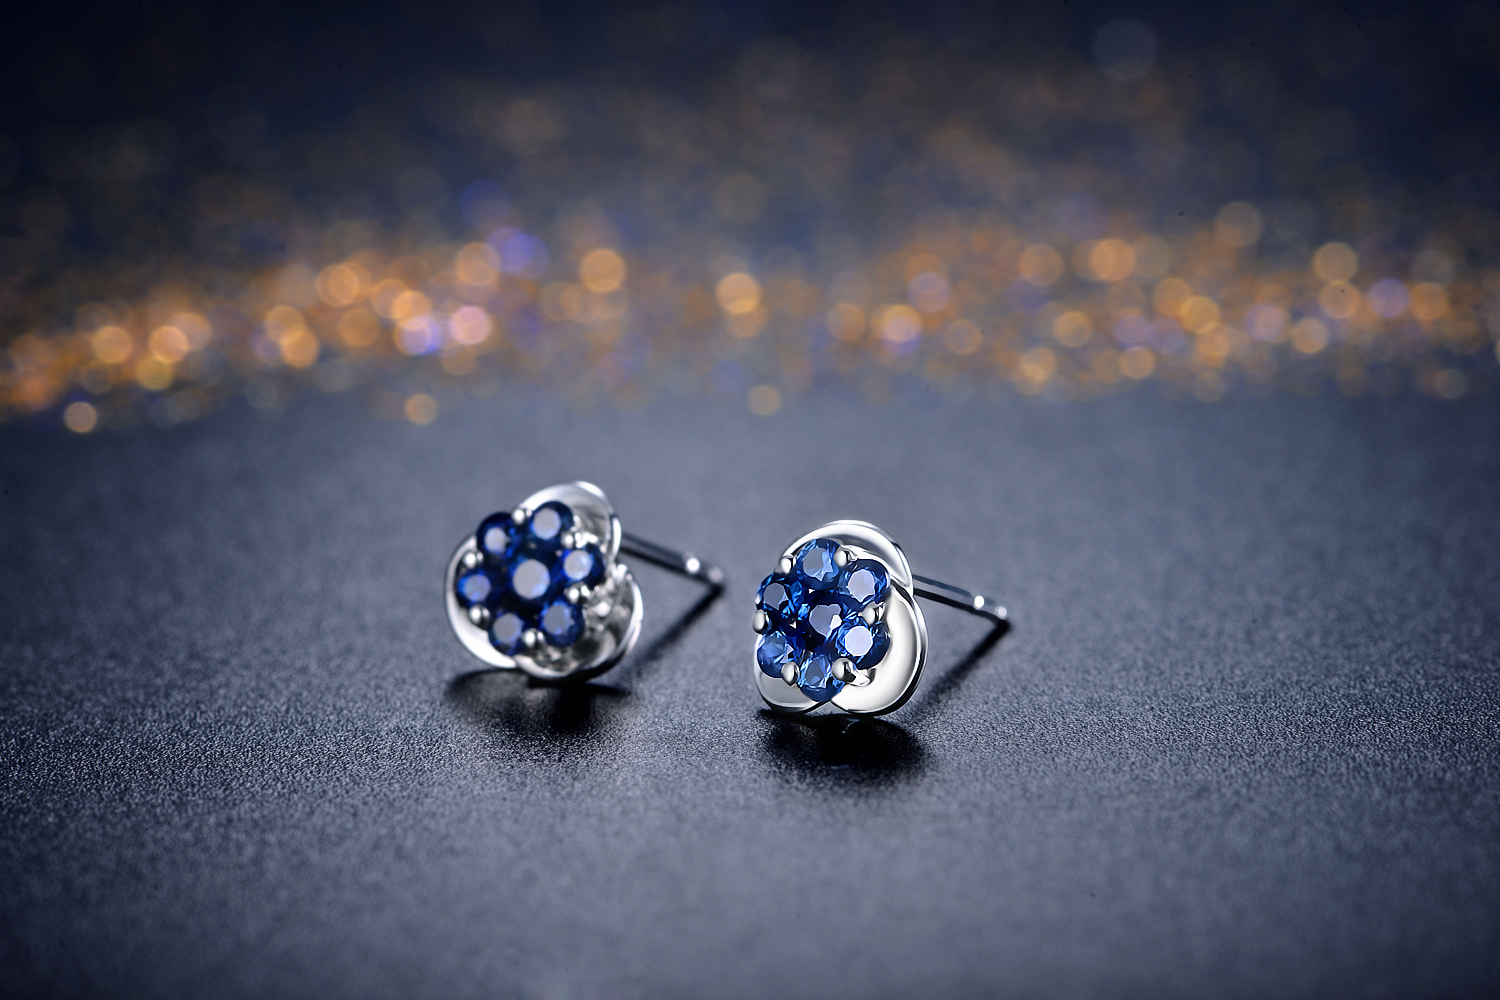 蓝宝石的价位为什么会受到产地的影响？产地对于蓝宝石的价位起到什么作用？